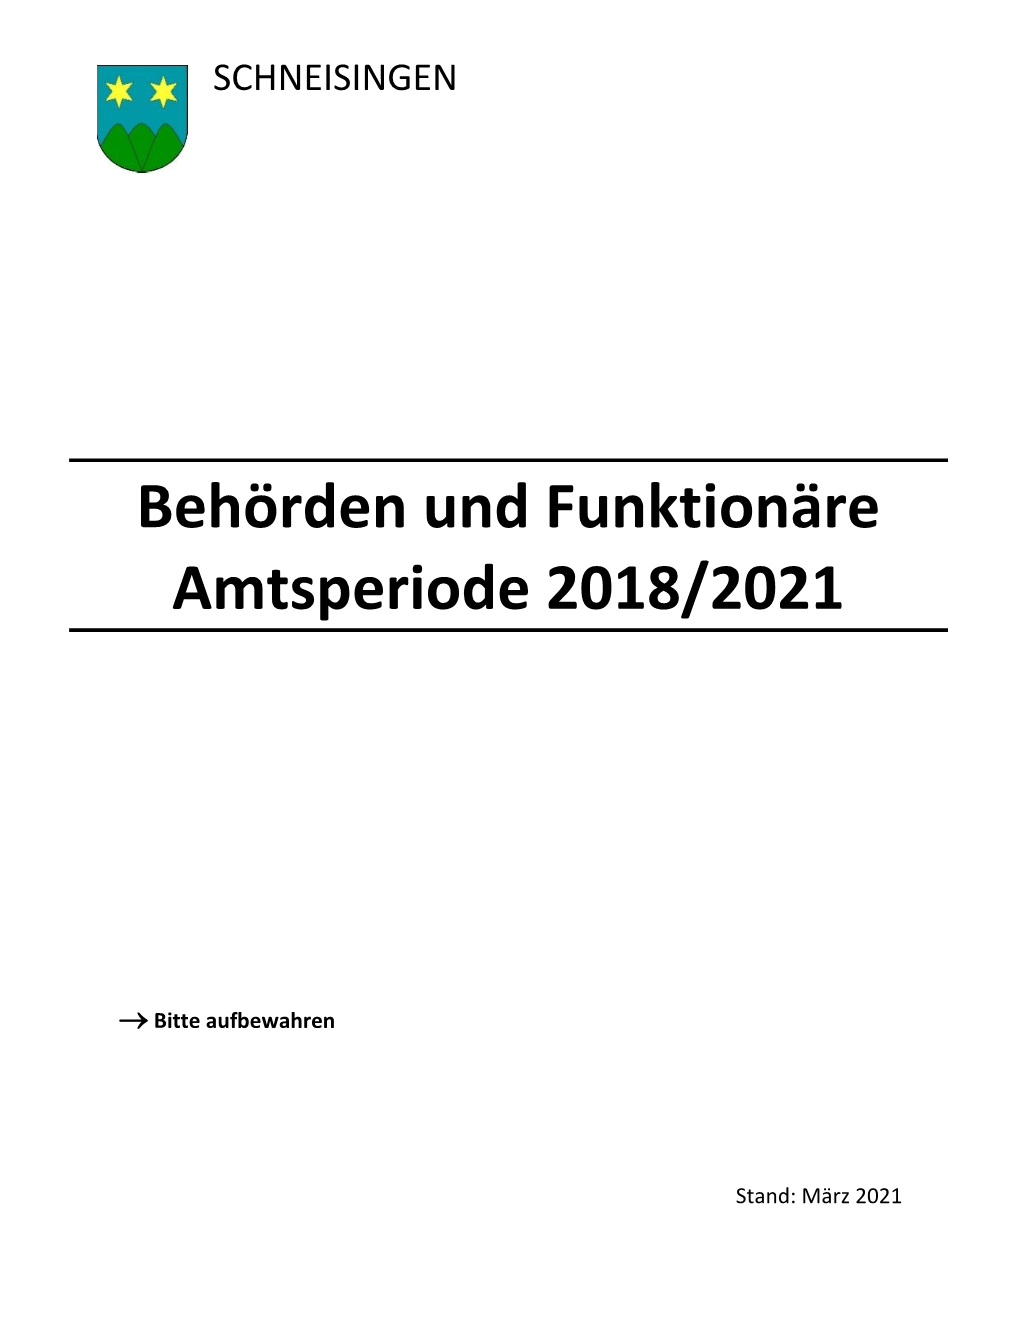 Behörden Und Funktionäre Amtsperiode 2018/2021